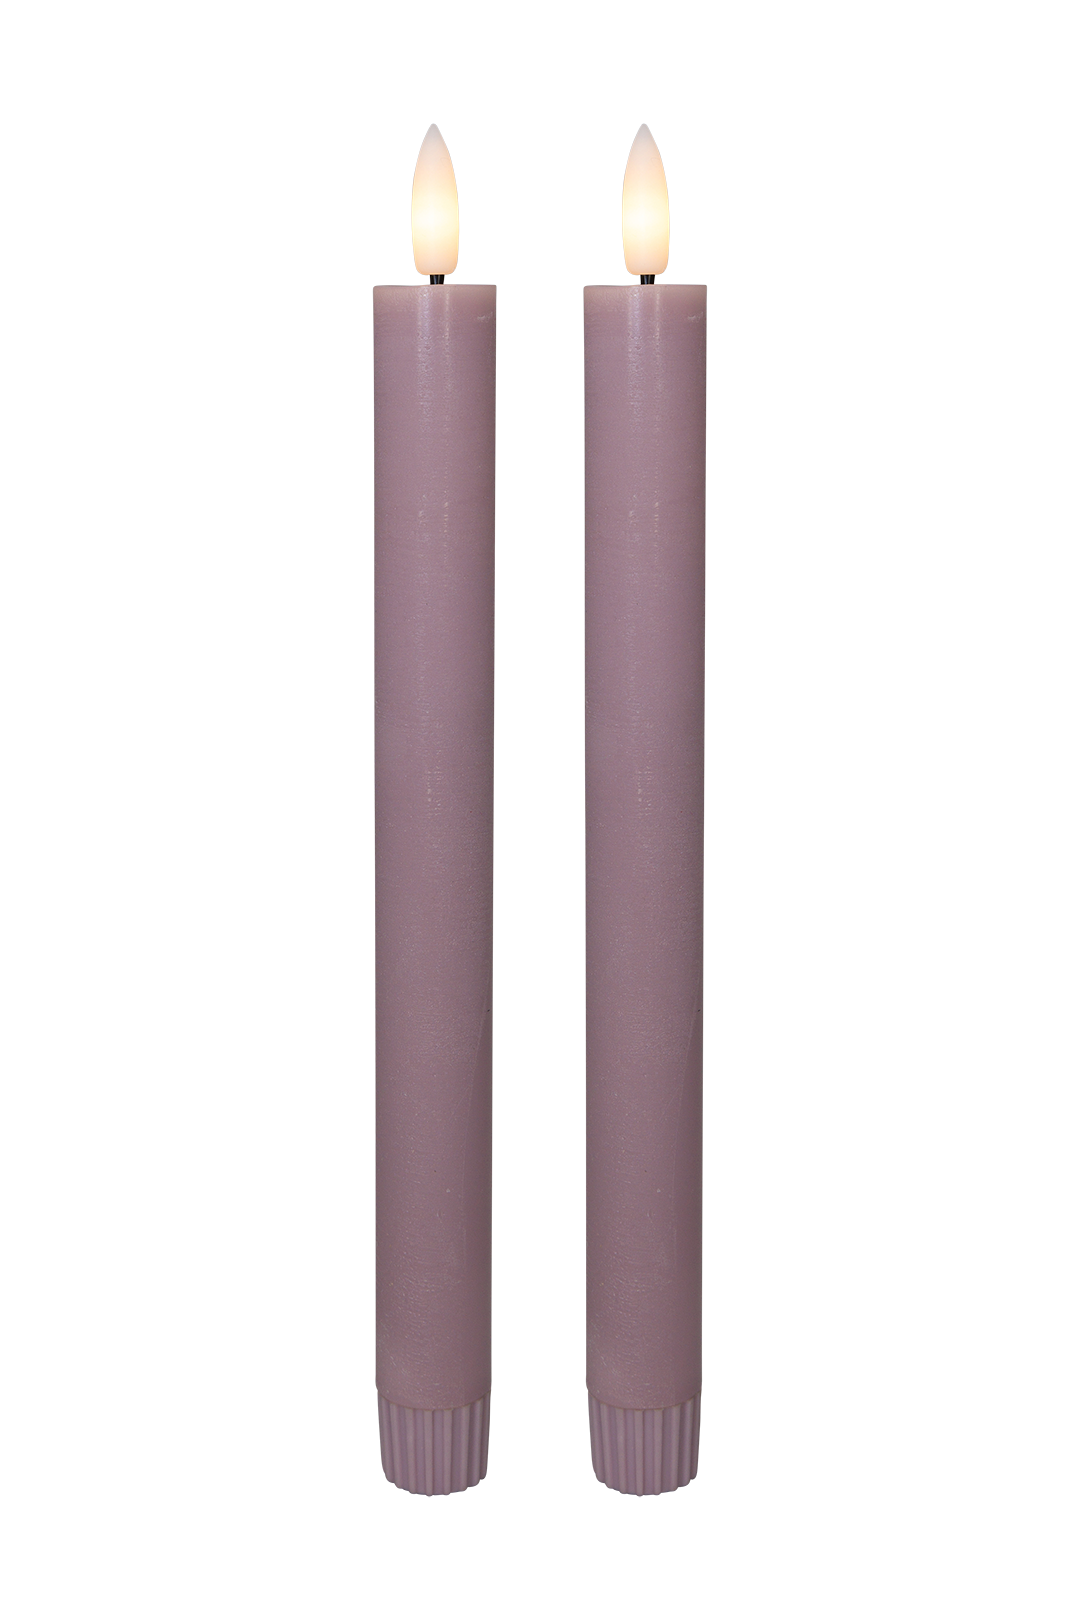 Cozzy kronelys, 3D flamme, 22,2 cm, rosa, 2 stk (bruges med fjernbetjening)